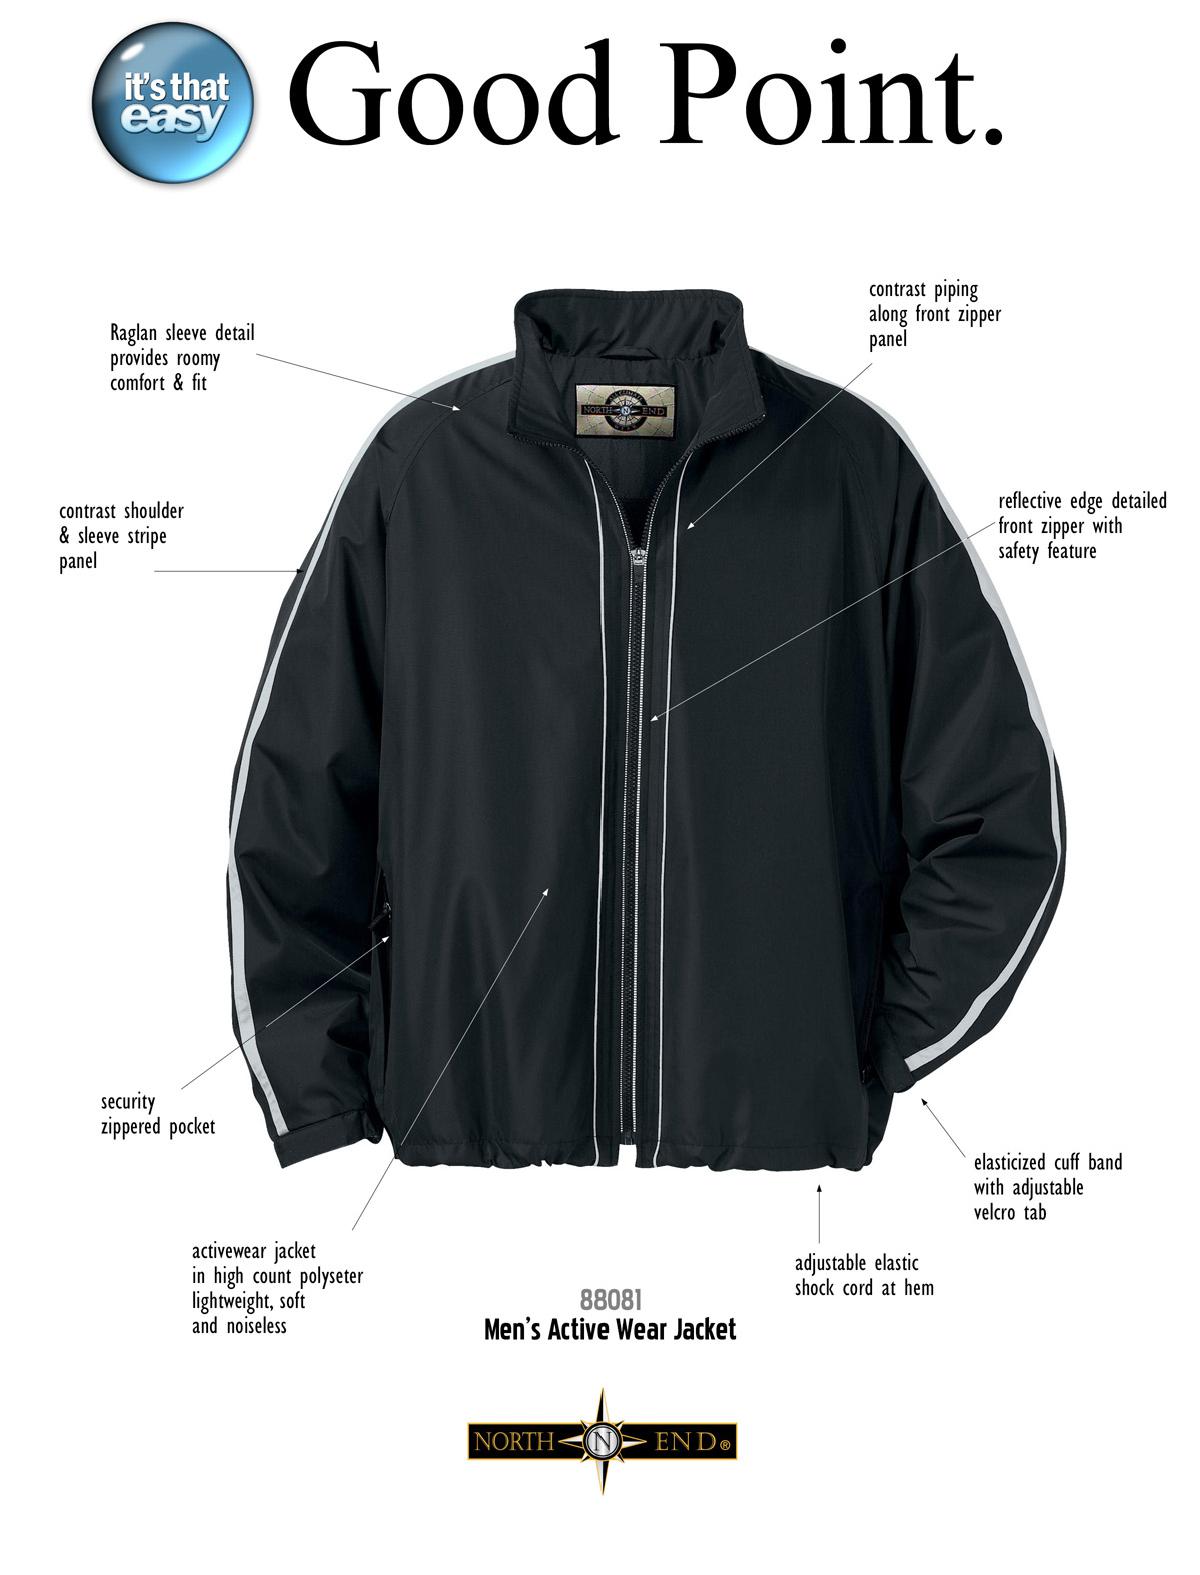 Ash City Lifestyle Athletic Separates 88081 - Men's Active Wear Jacket